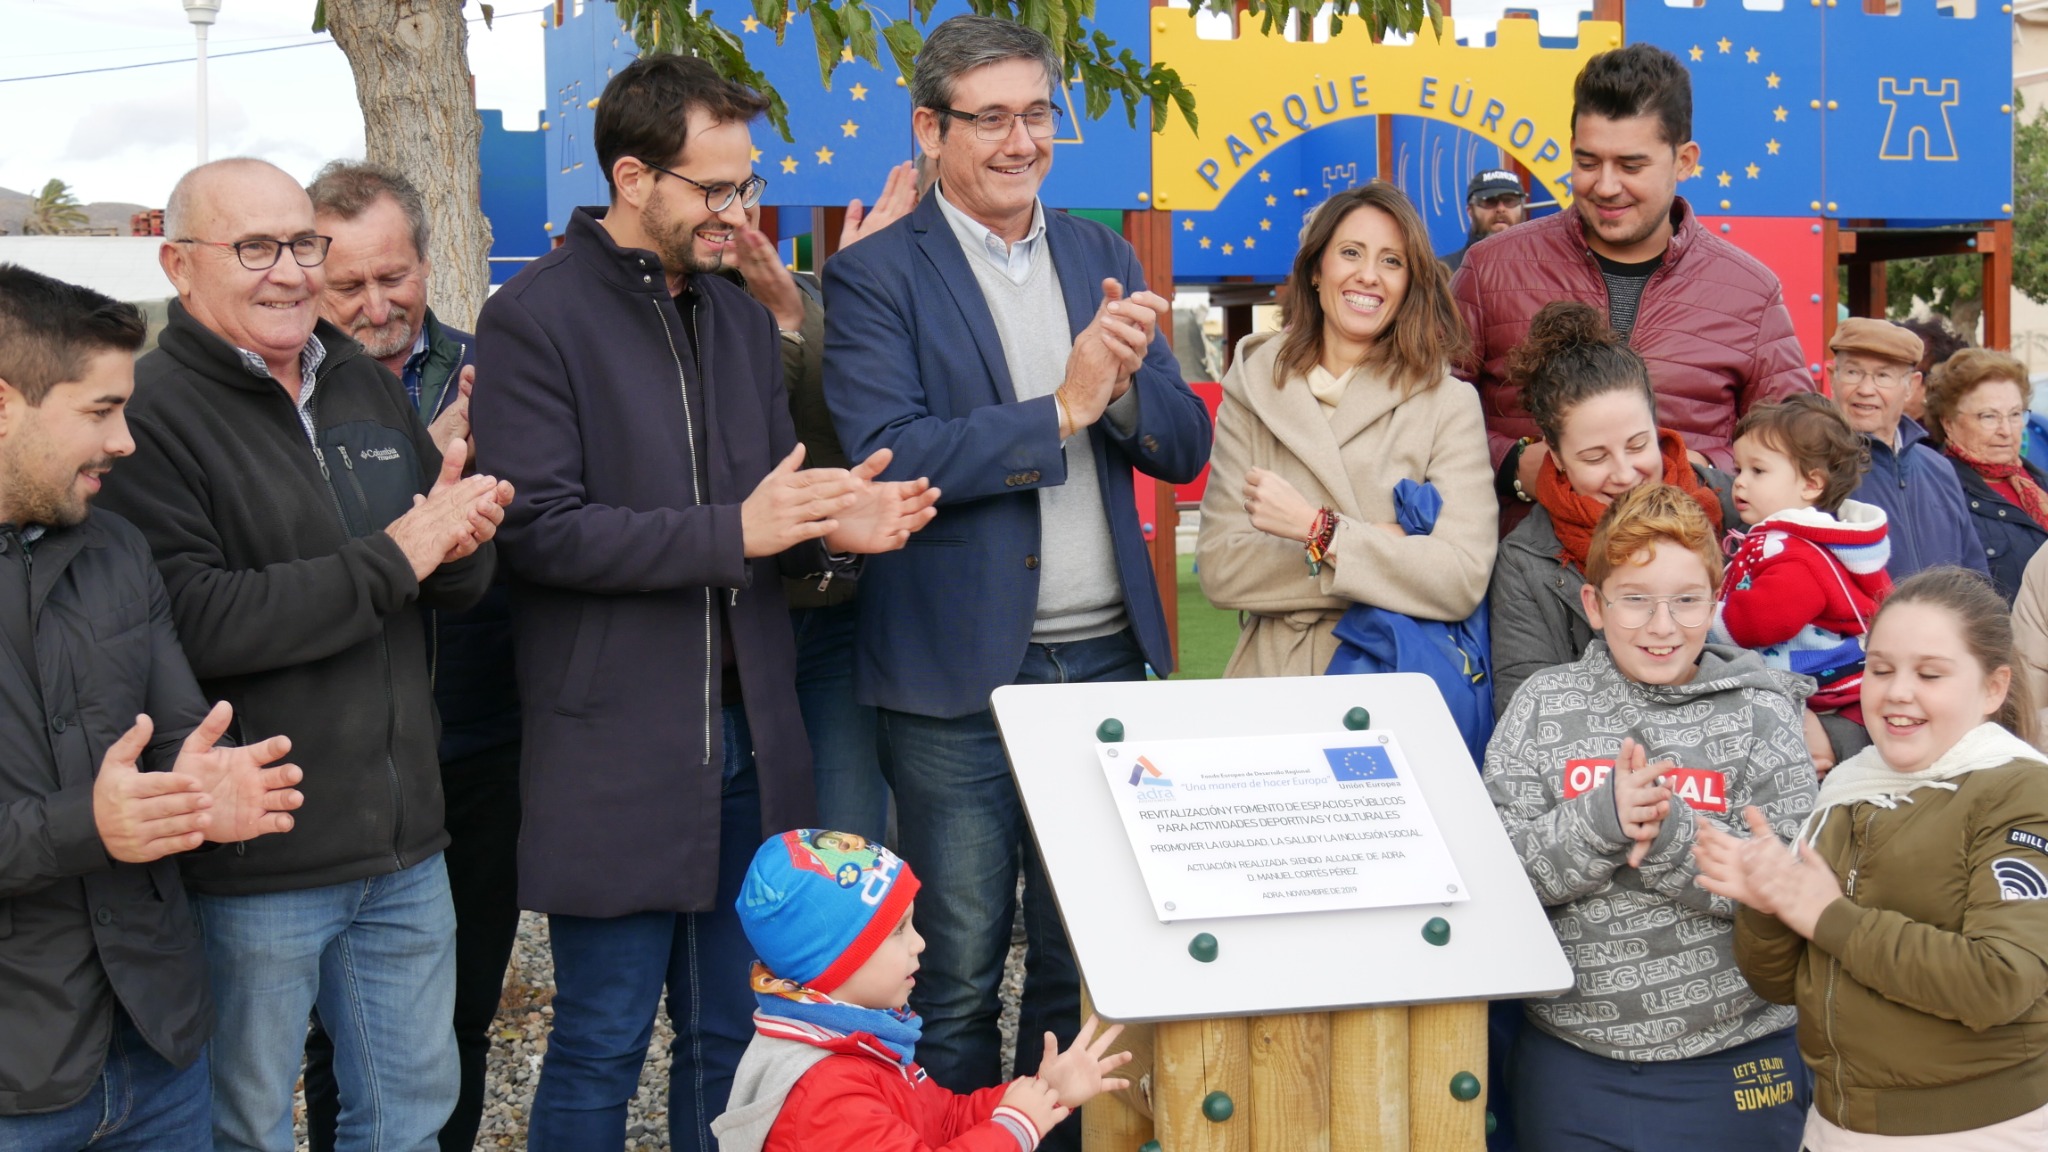 Adra inaugura su ‘Parque Europa’ con el primer circuito ‘Cross Riders’ del municipio